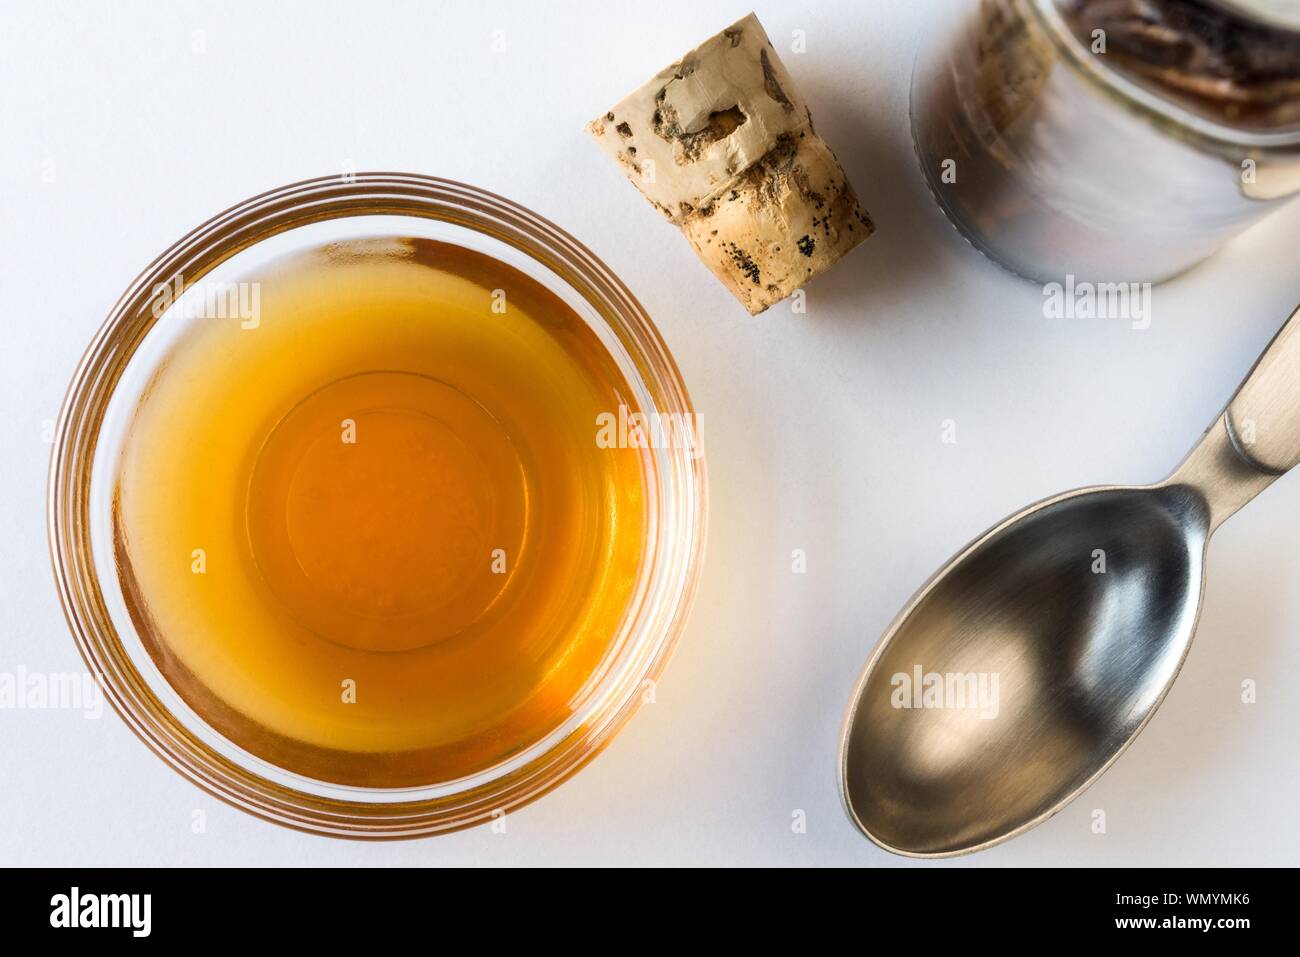 Direttamente sopra il colpo di estratto di vaniglia in un recipiente su sfondo bianco Foto Stock